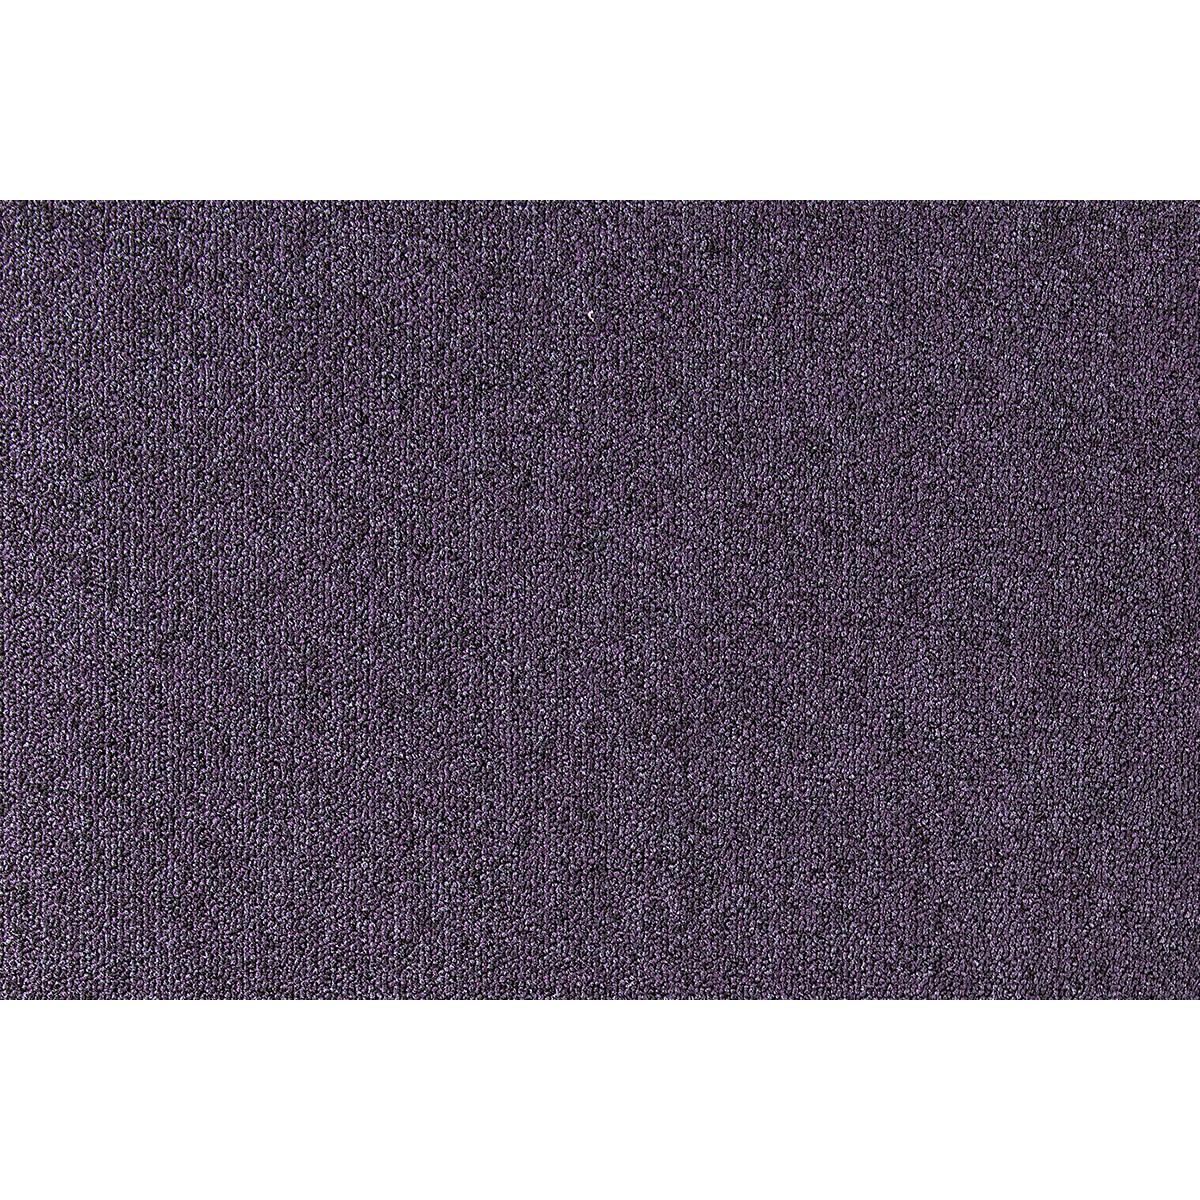 Metrážový koberec Cobalt SDN 64096 - AB tmavě fialový, zátěžový